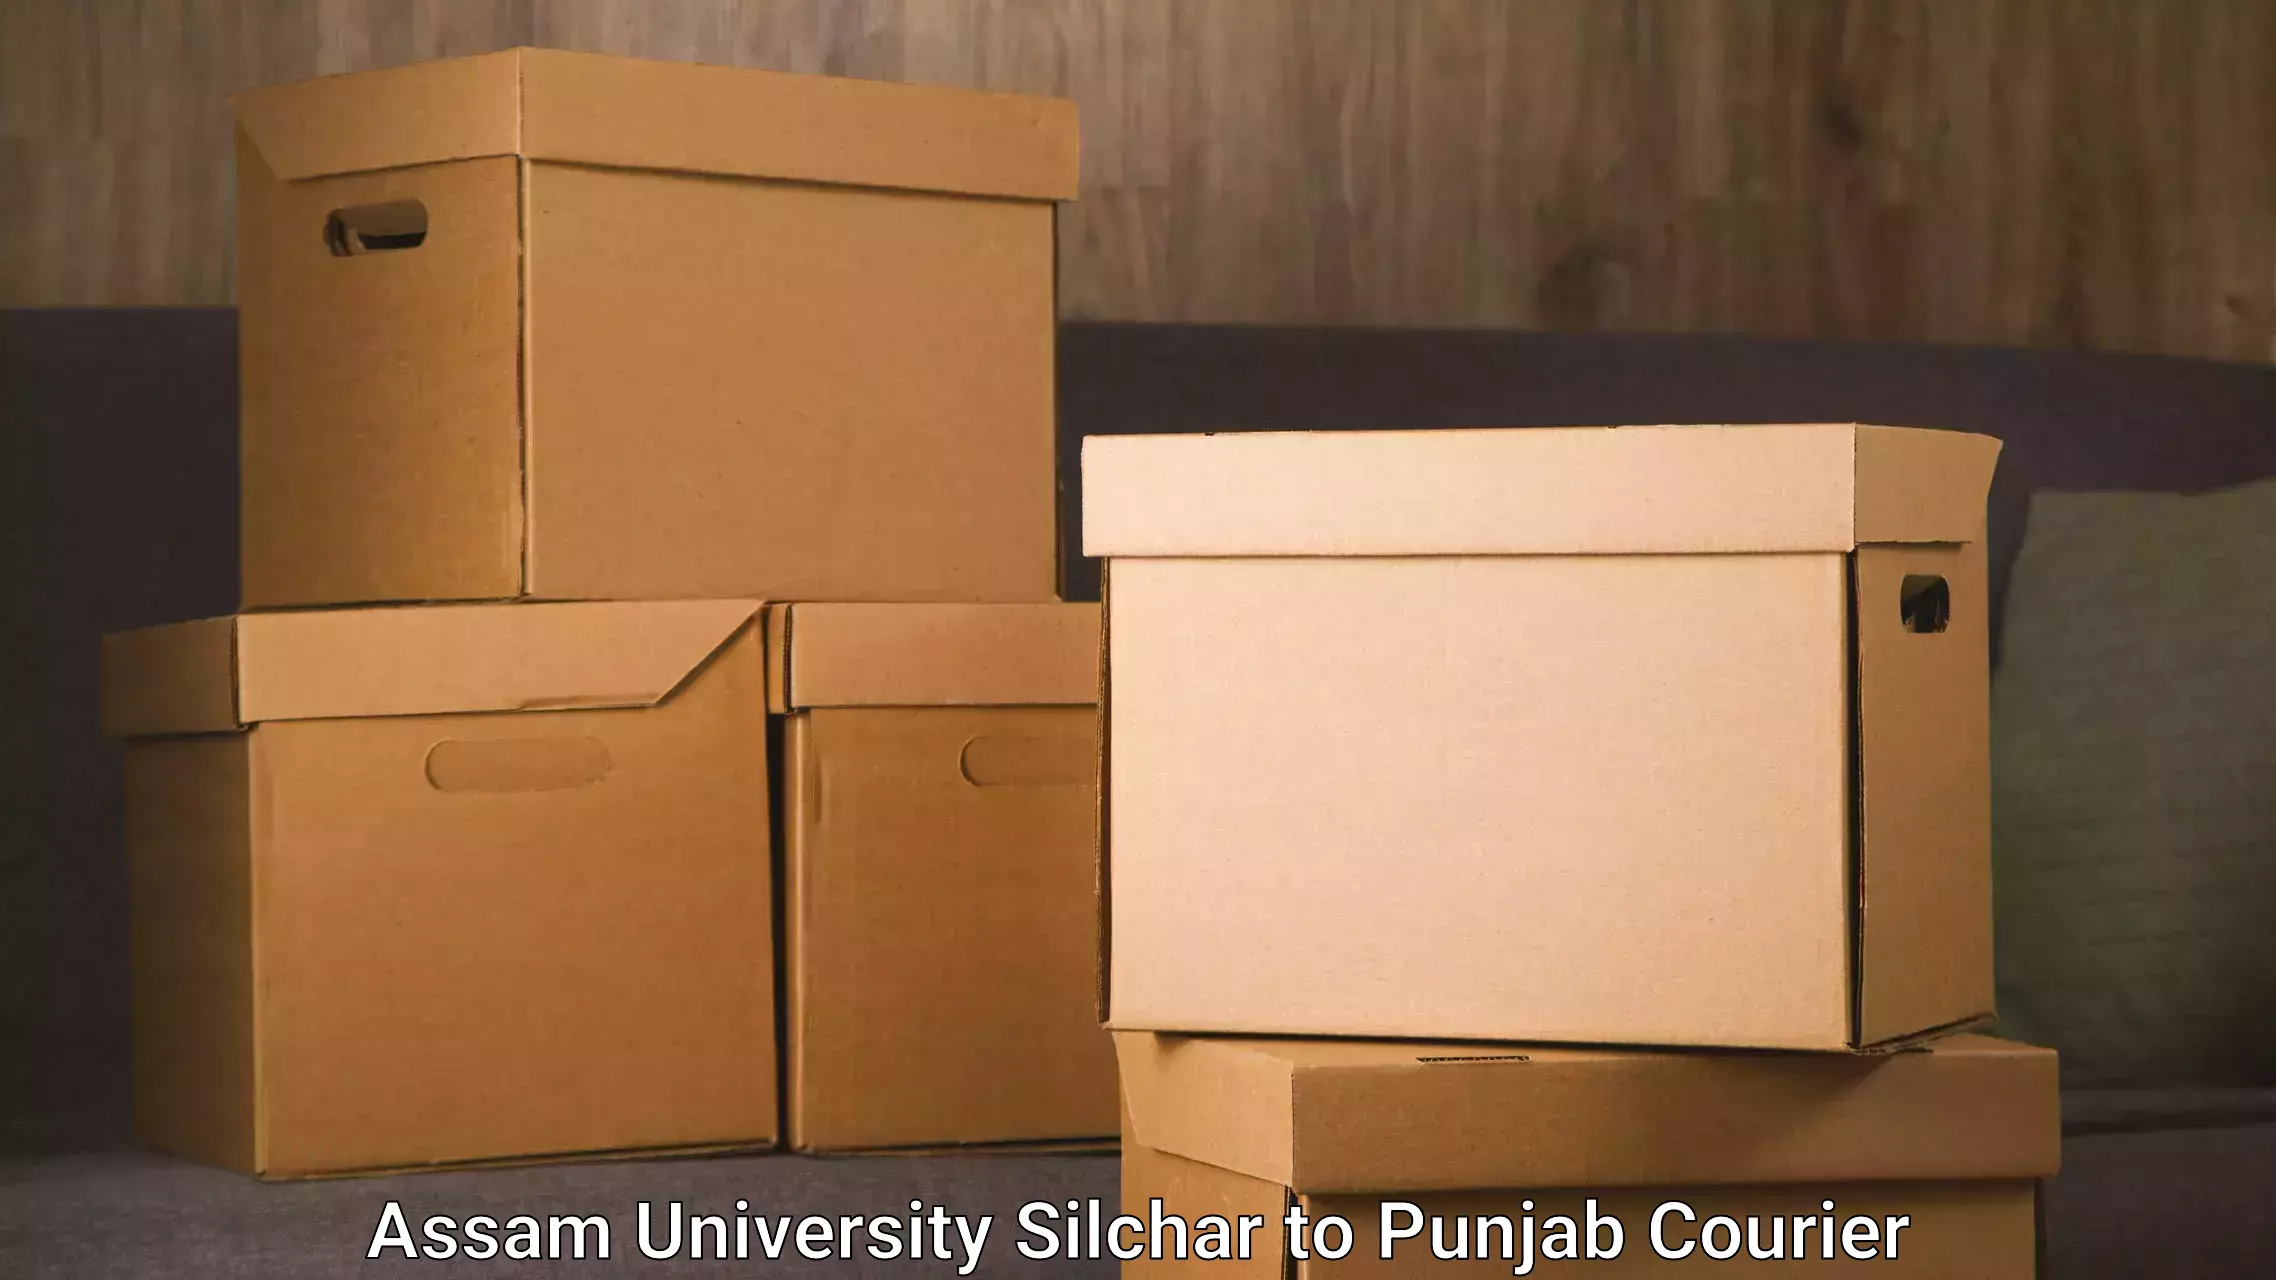 Delivery service partnership Assam University Silchar to Talwandi Sabo